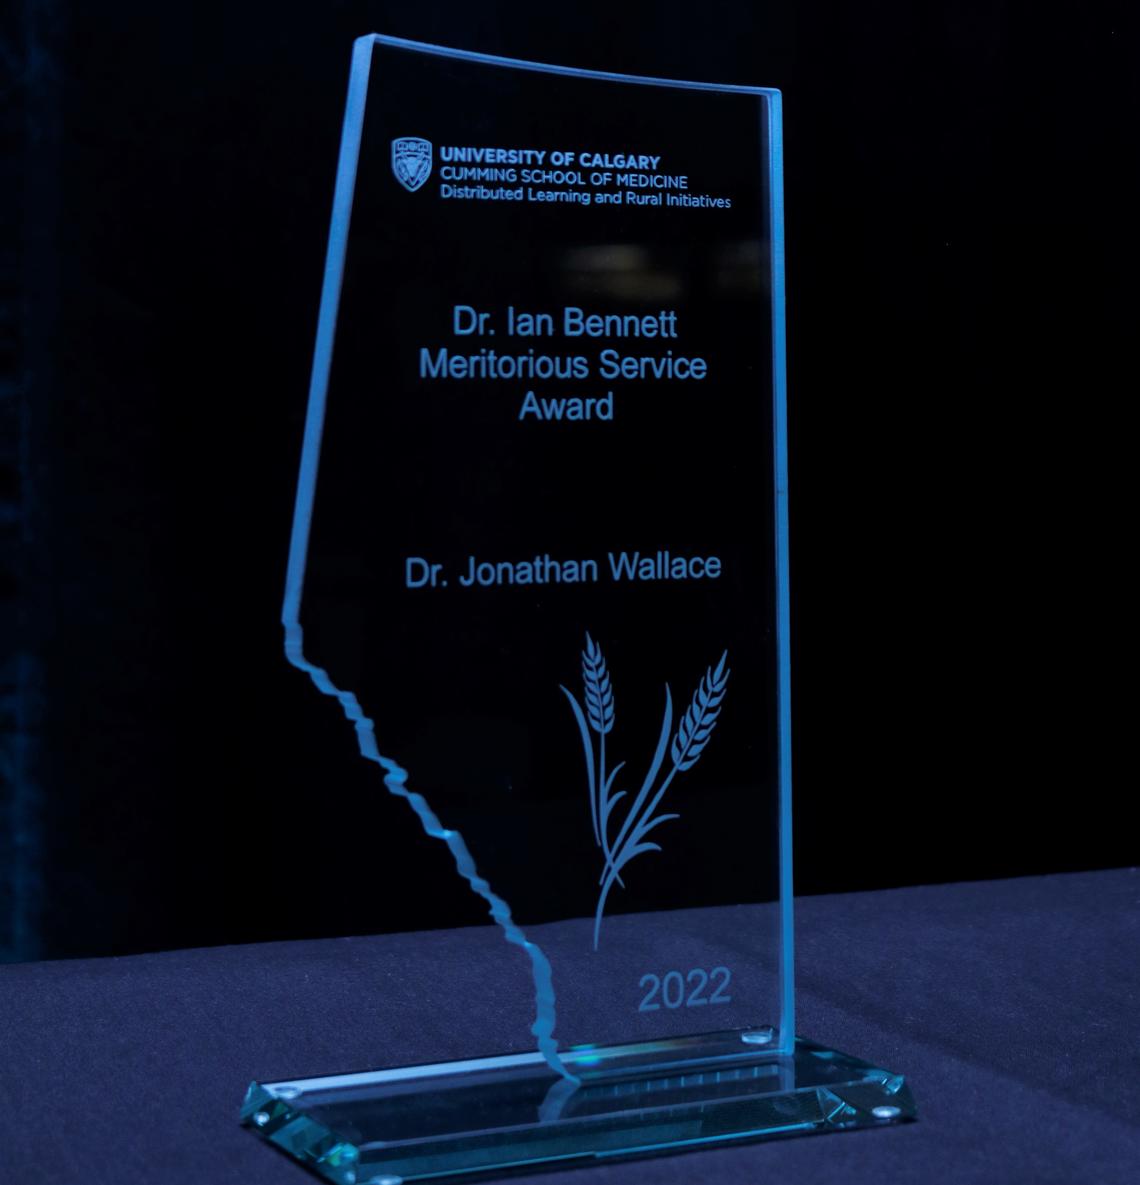 Dr. Ian Bennett Award